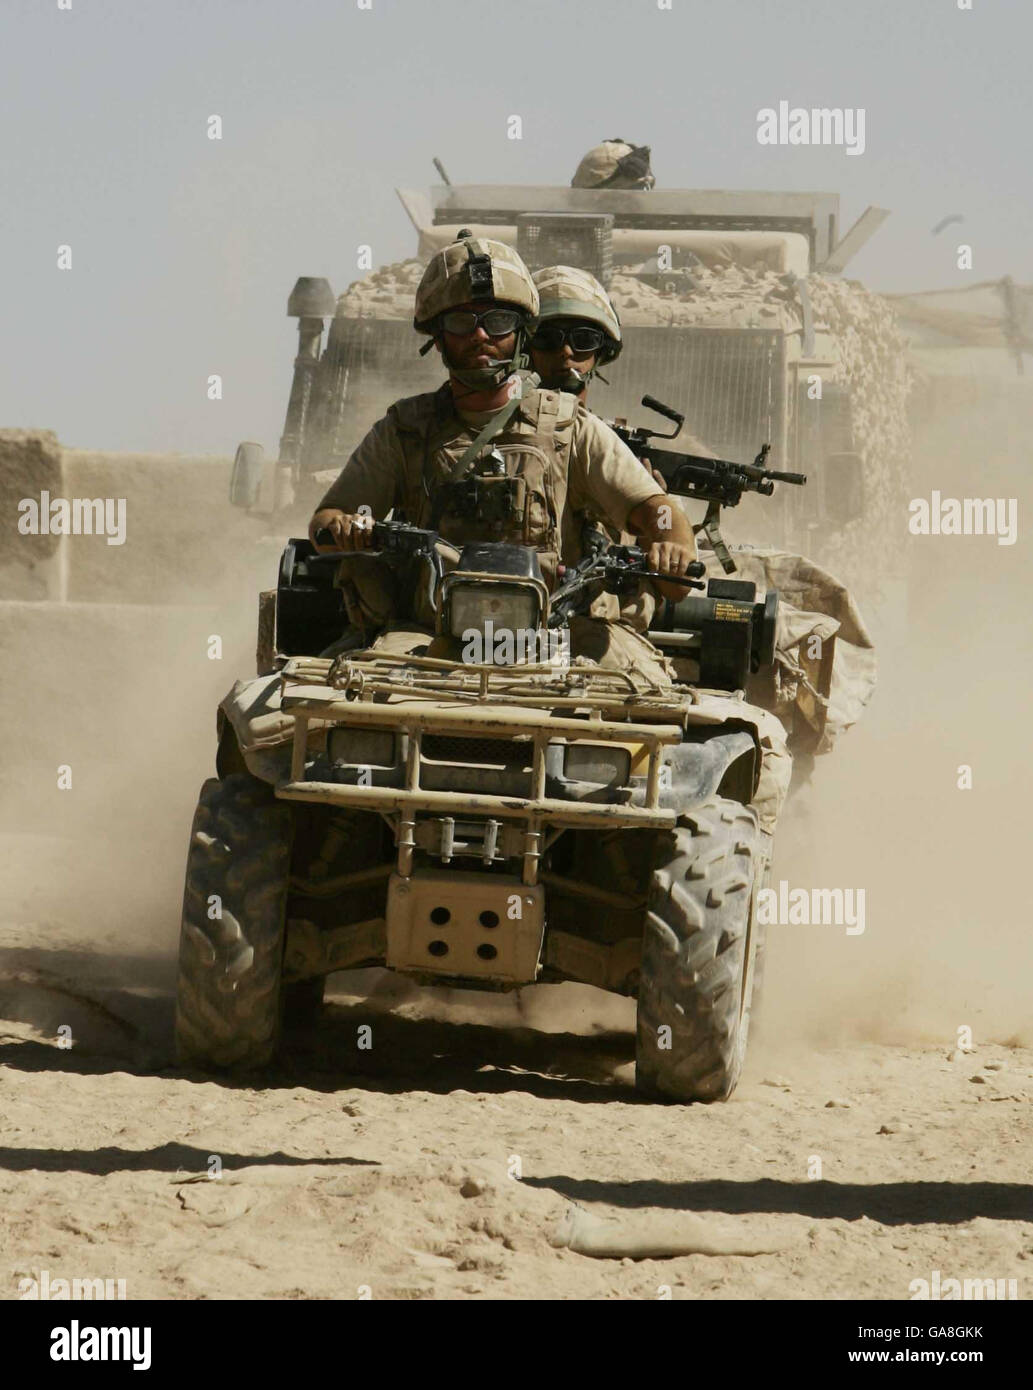 La CPL Mark Ravey dei Foresters di Worcester e Sherwood, di Chester, si dirige in battaglia nella zona verde, nella provincia di Helmand, in Afghanistan. Foto Stock